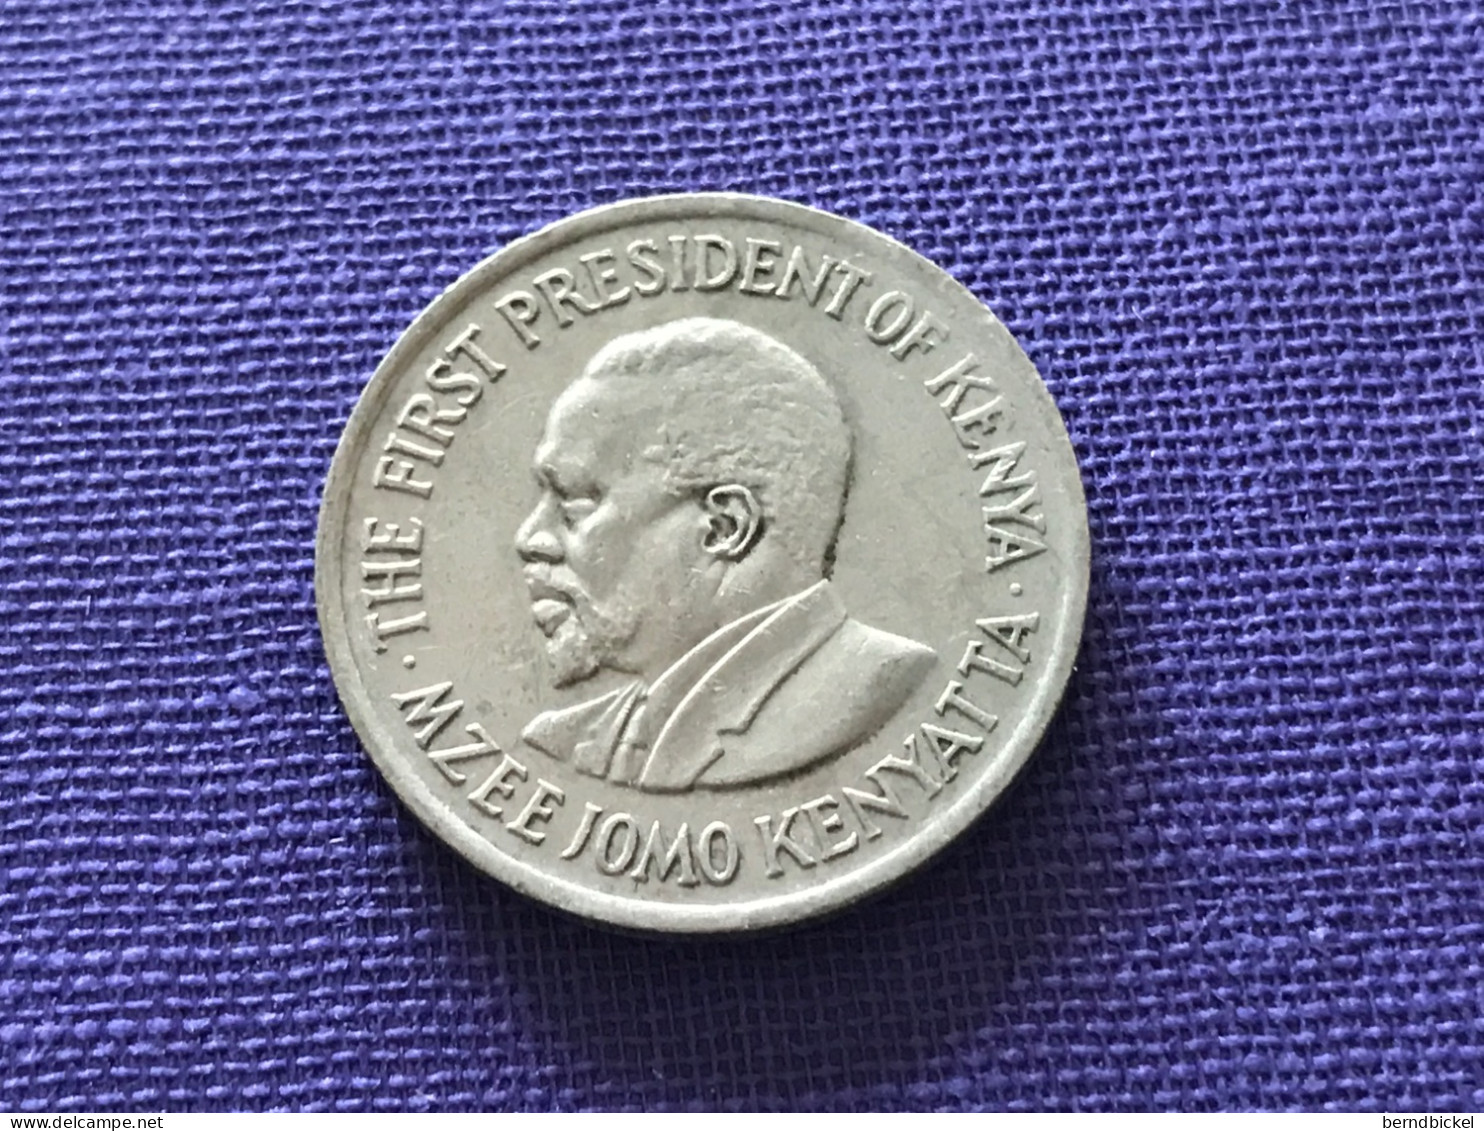 Münze Münzen Umlaumünze Kenia 50 Cents 1978 - Kenia